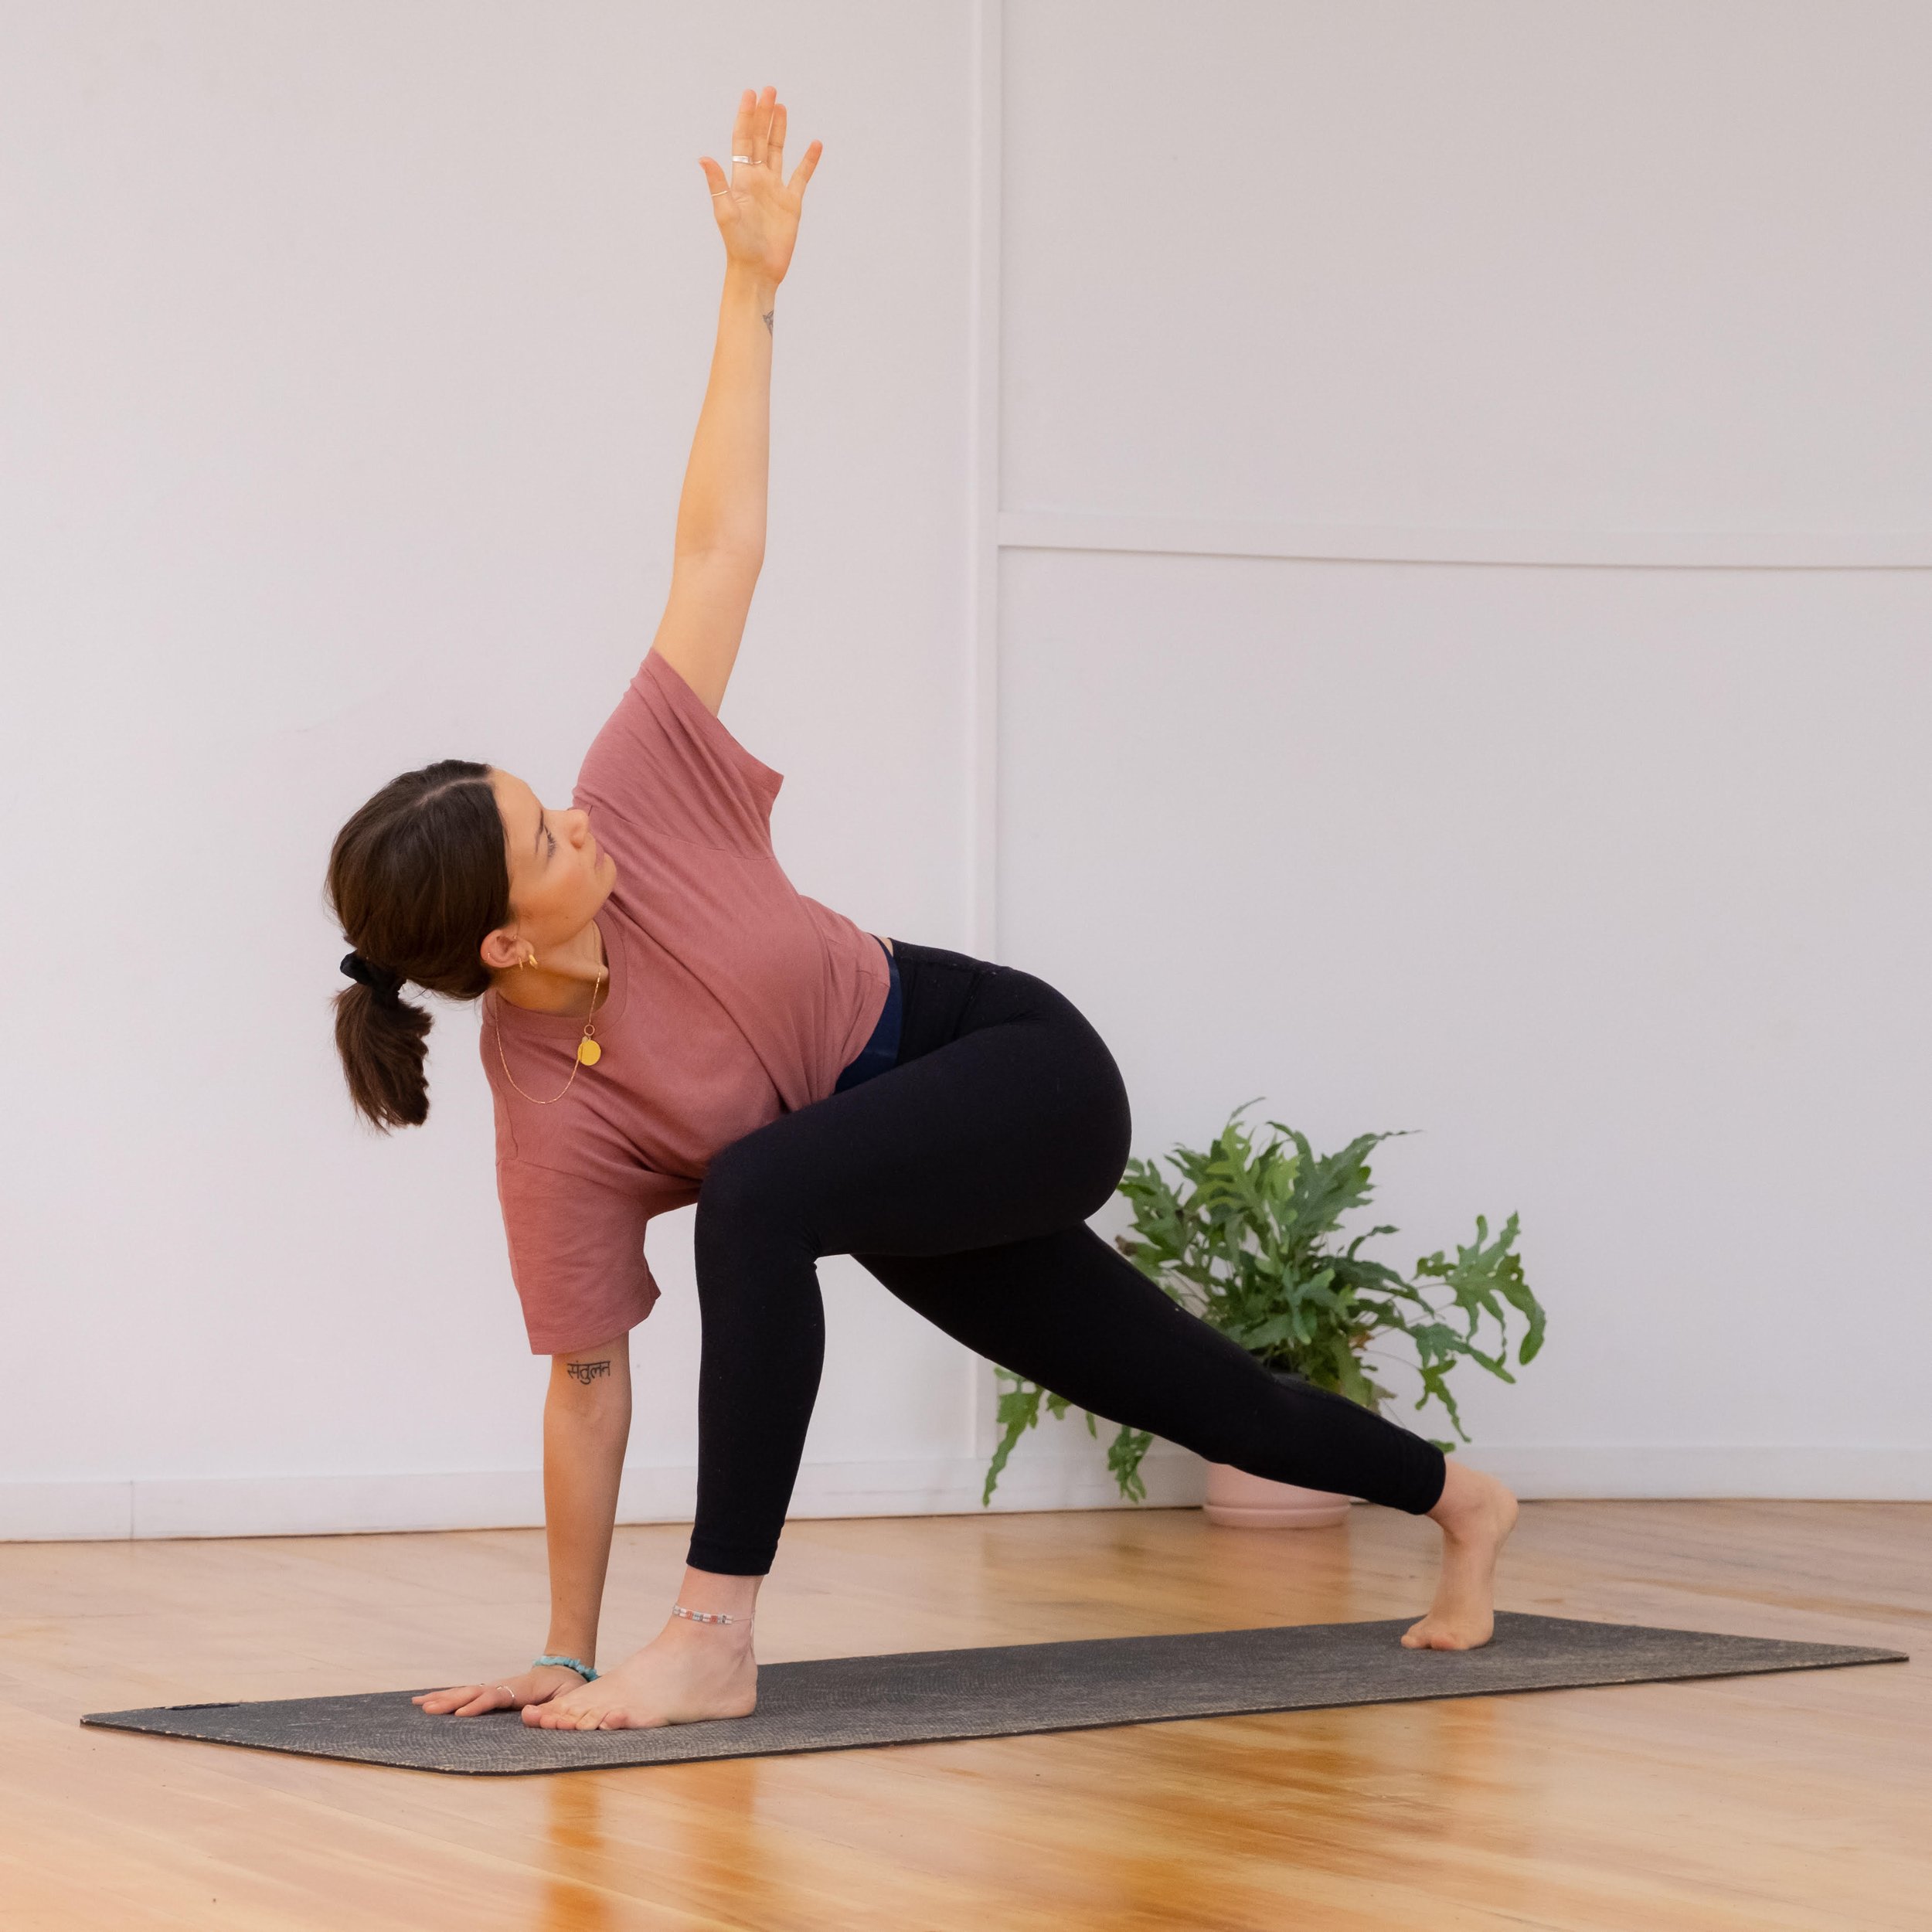 Slow Vinyasa Yoga for All Levels Mindful Flow with Visualization Meditation  | Fitness Blender